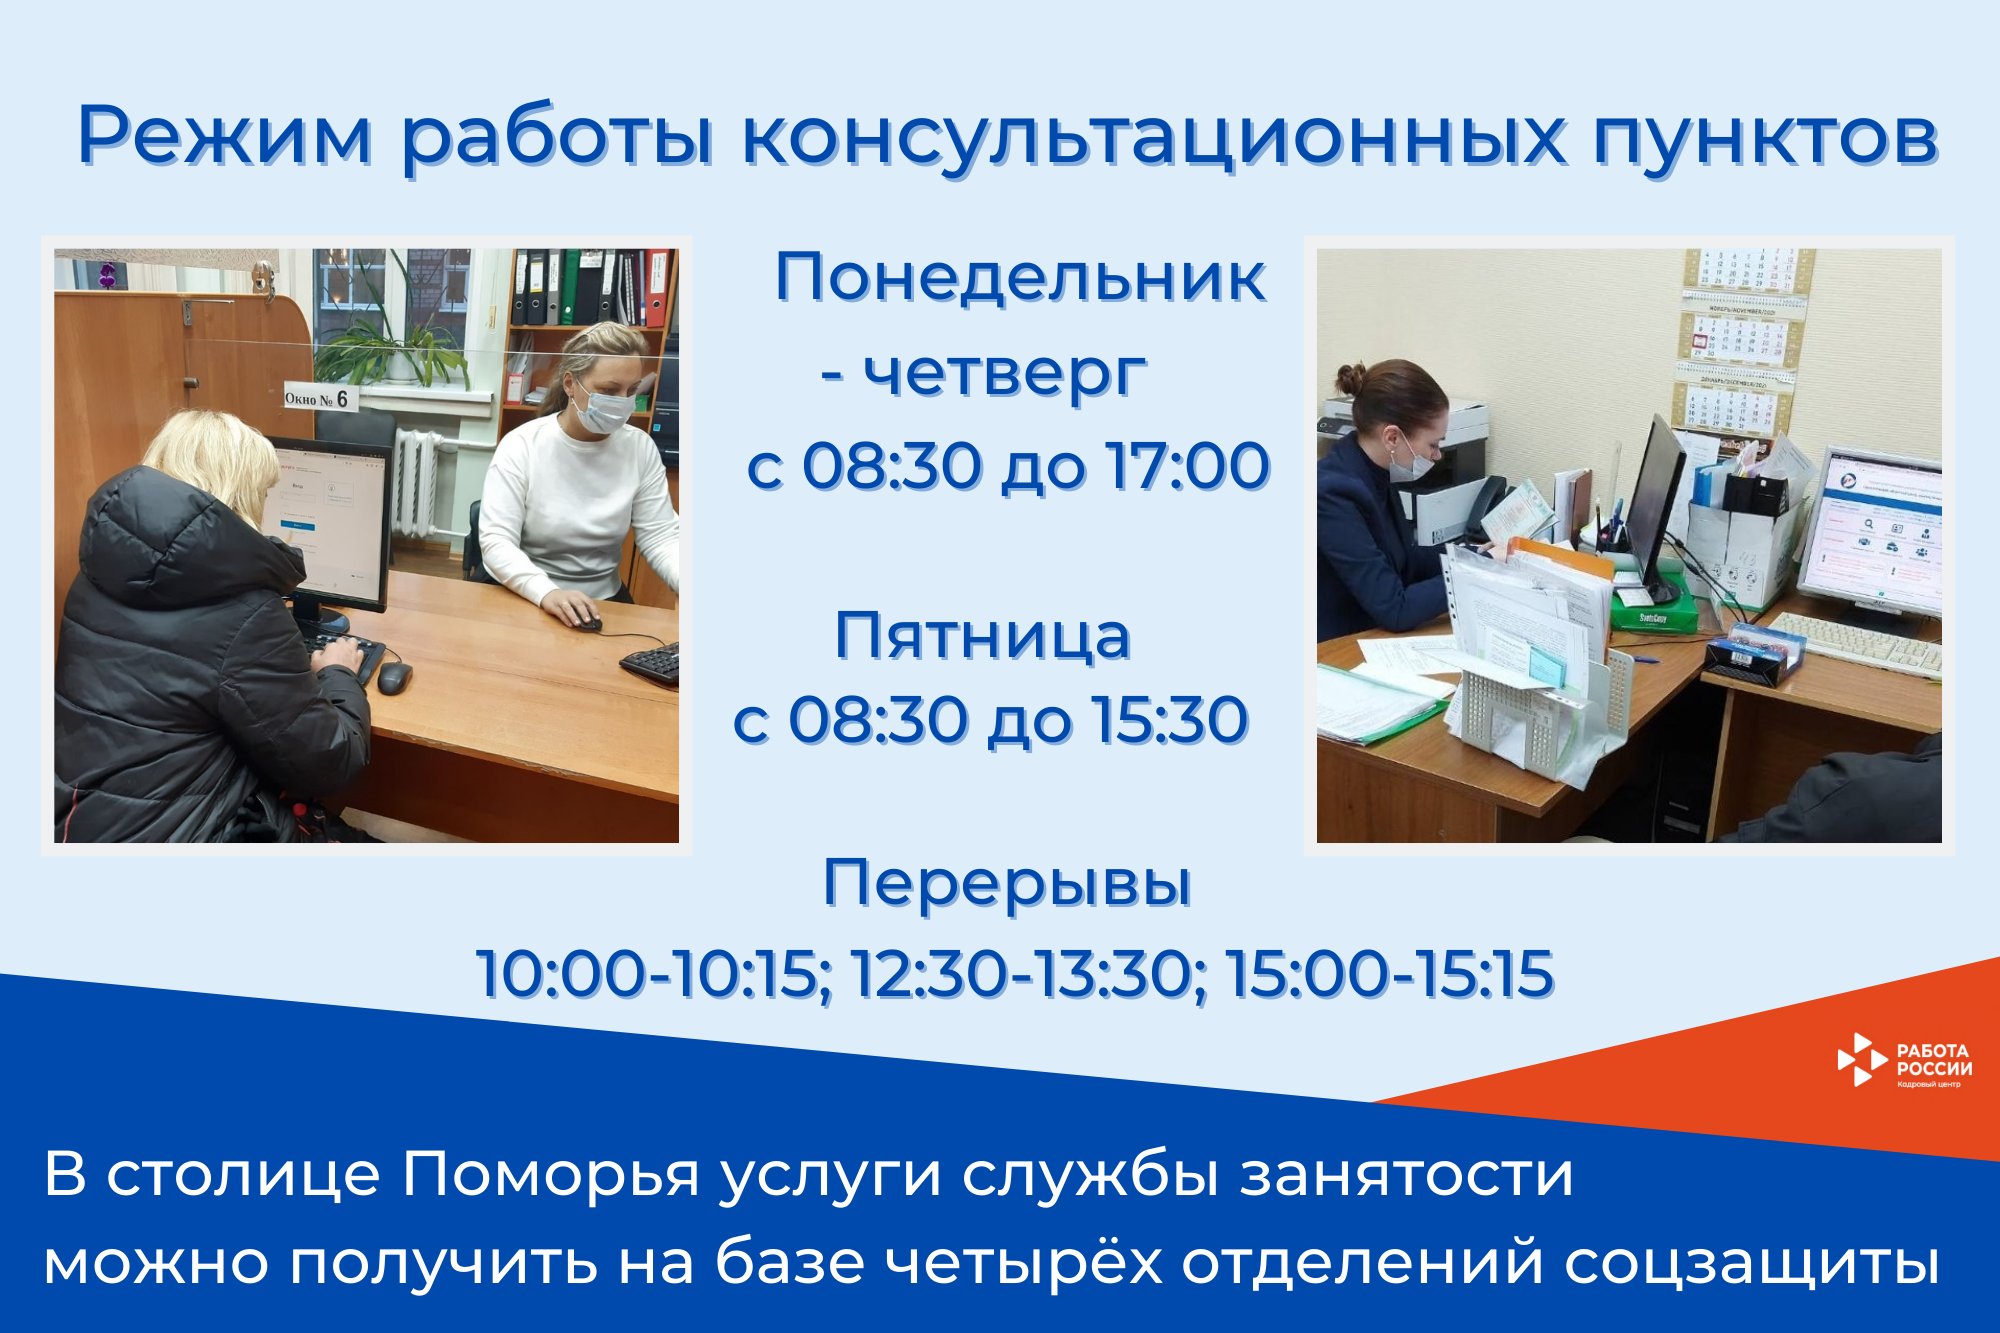 В отделениях соцзащиты Архангельска продолжают работать консультационные пункты службы занятости